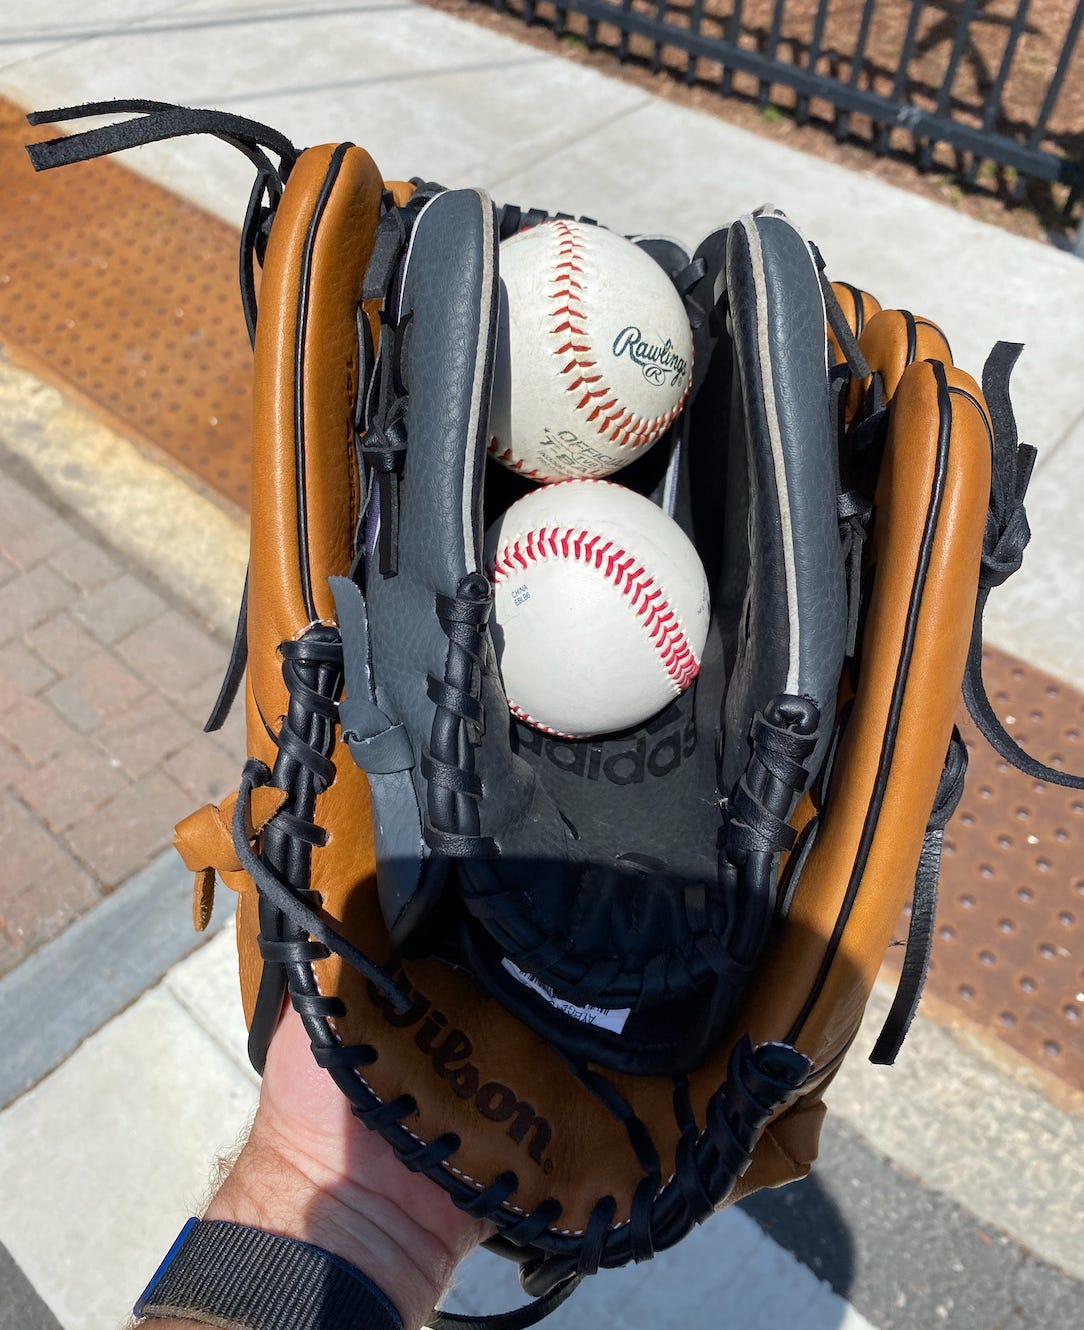 Two baseball gloves, child's nestled inside an adult's, cradling two baseballs.